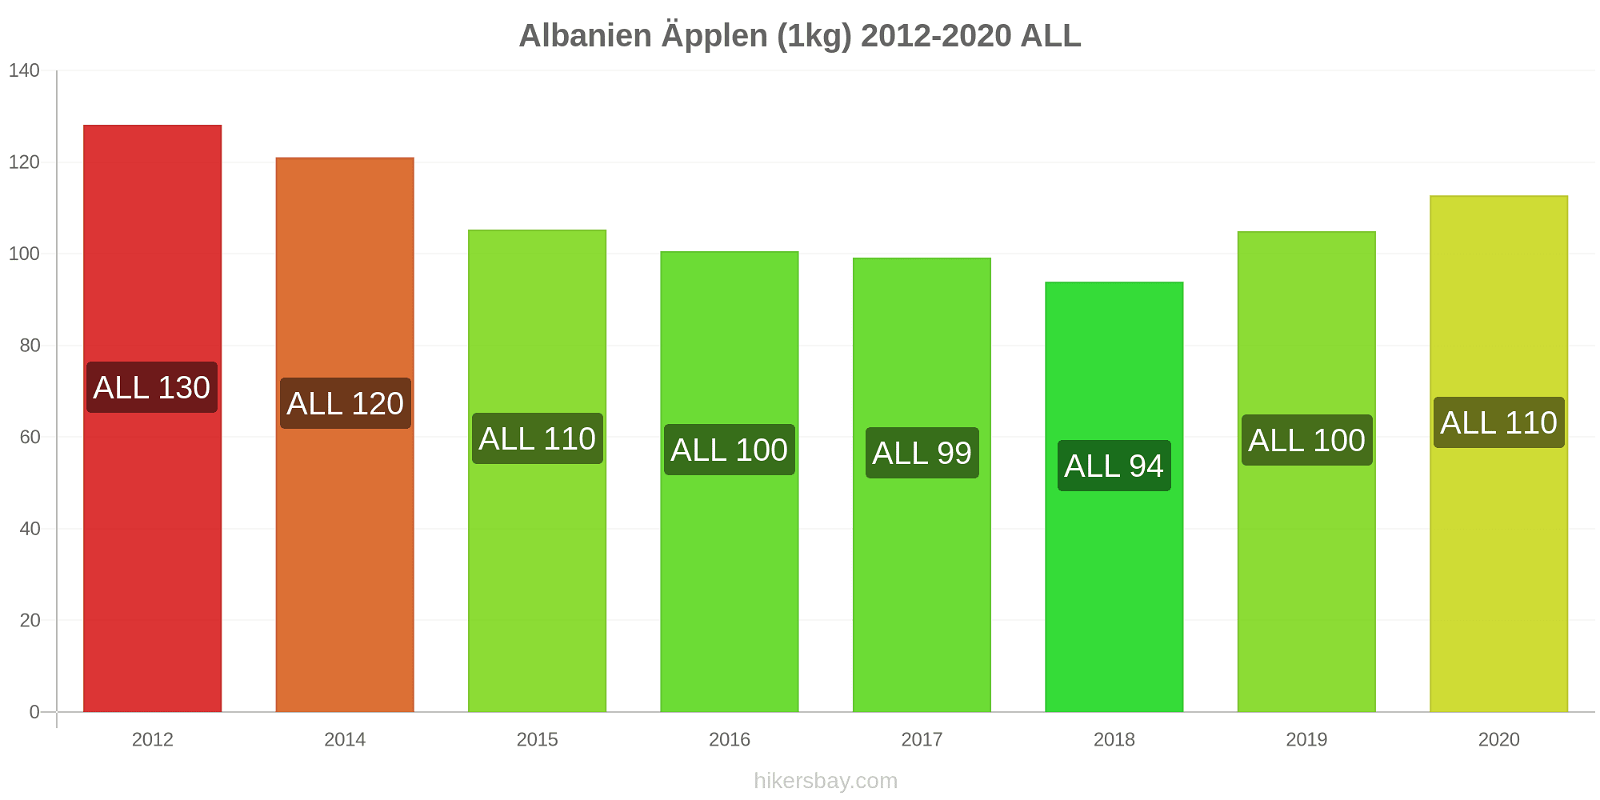 Albanien prisförändringar Äpplen (1kg) hikersbay.com